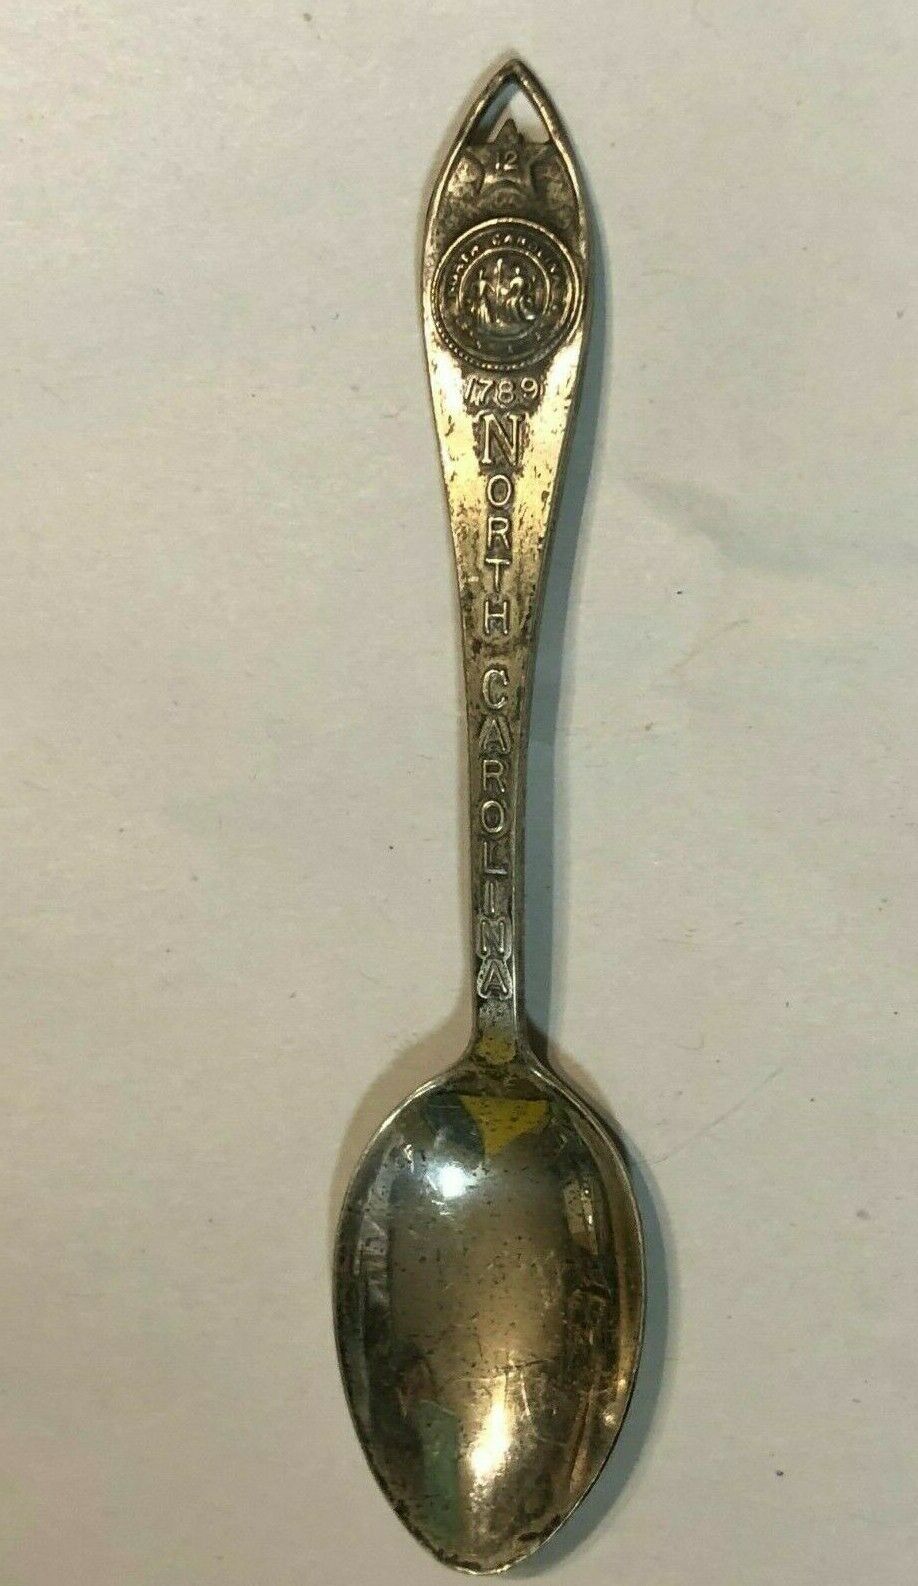 1979 North Carolina Collector Souvenir Sterling Silver Spoon